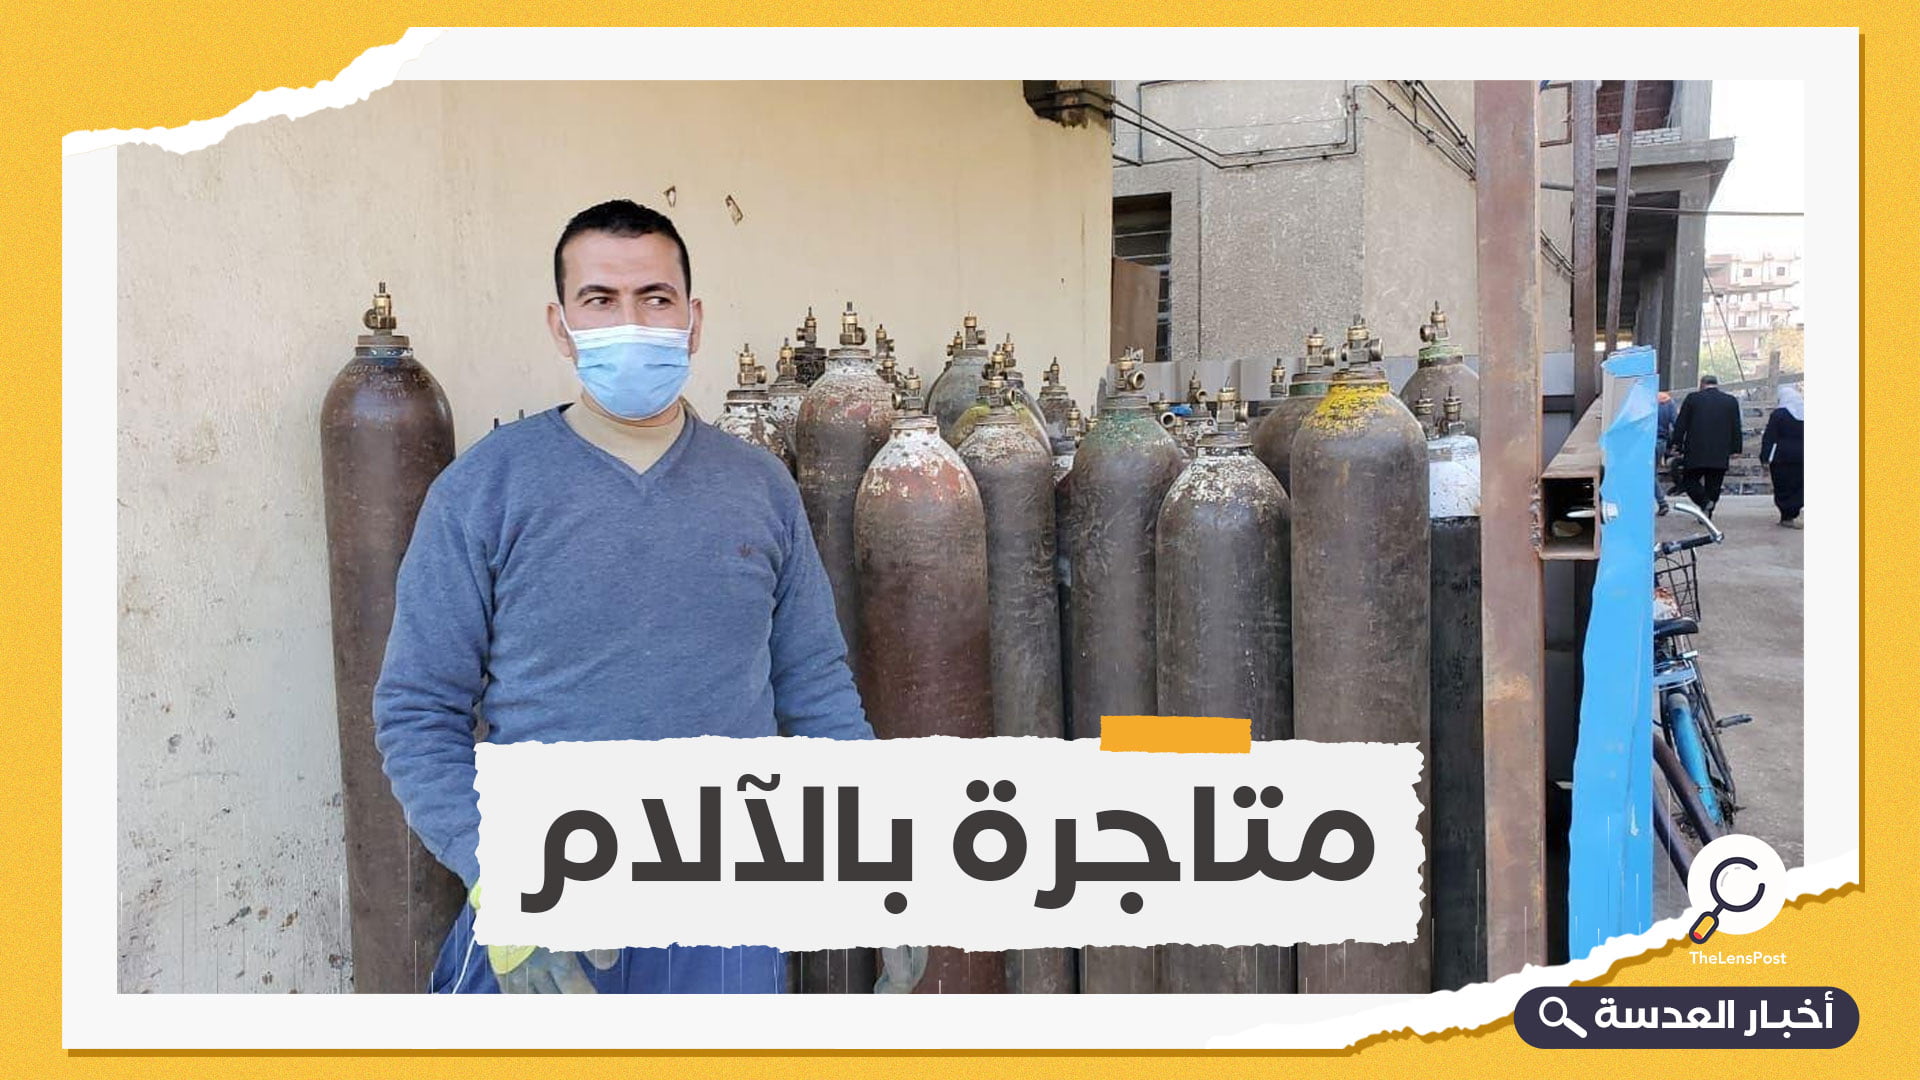 بعد كارثة مستشفى الحسينية.. ارتفاع رهيب في أسعار أسطوانات الأكسجين بمصر